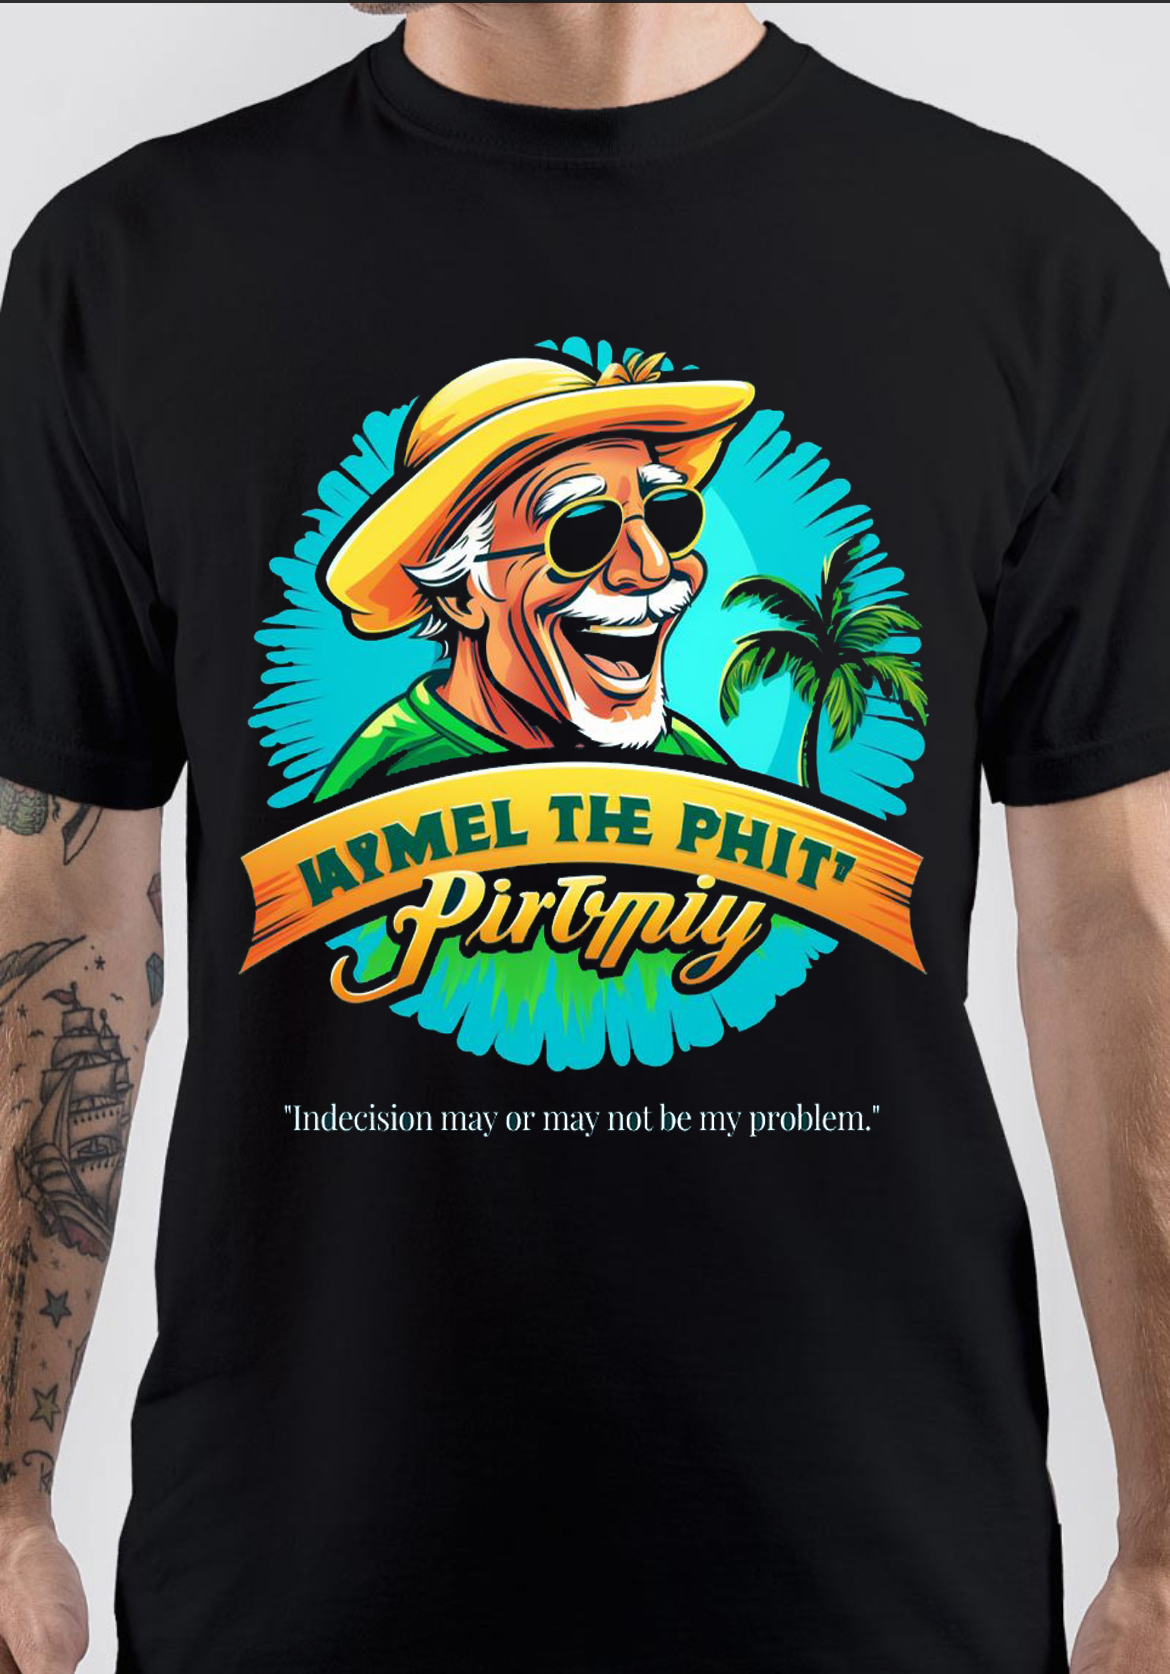 Jimmy Buffett T-Shirt And Merchandise